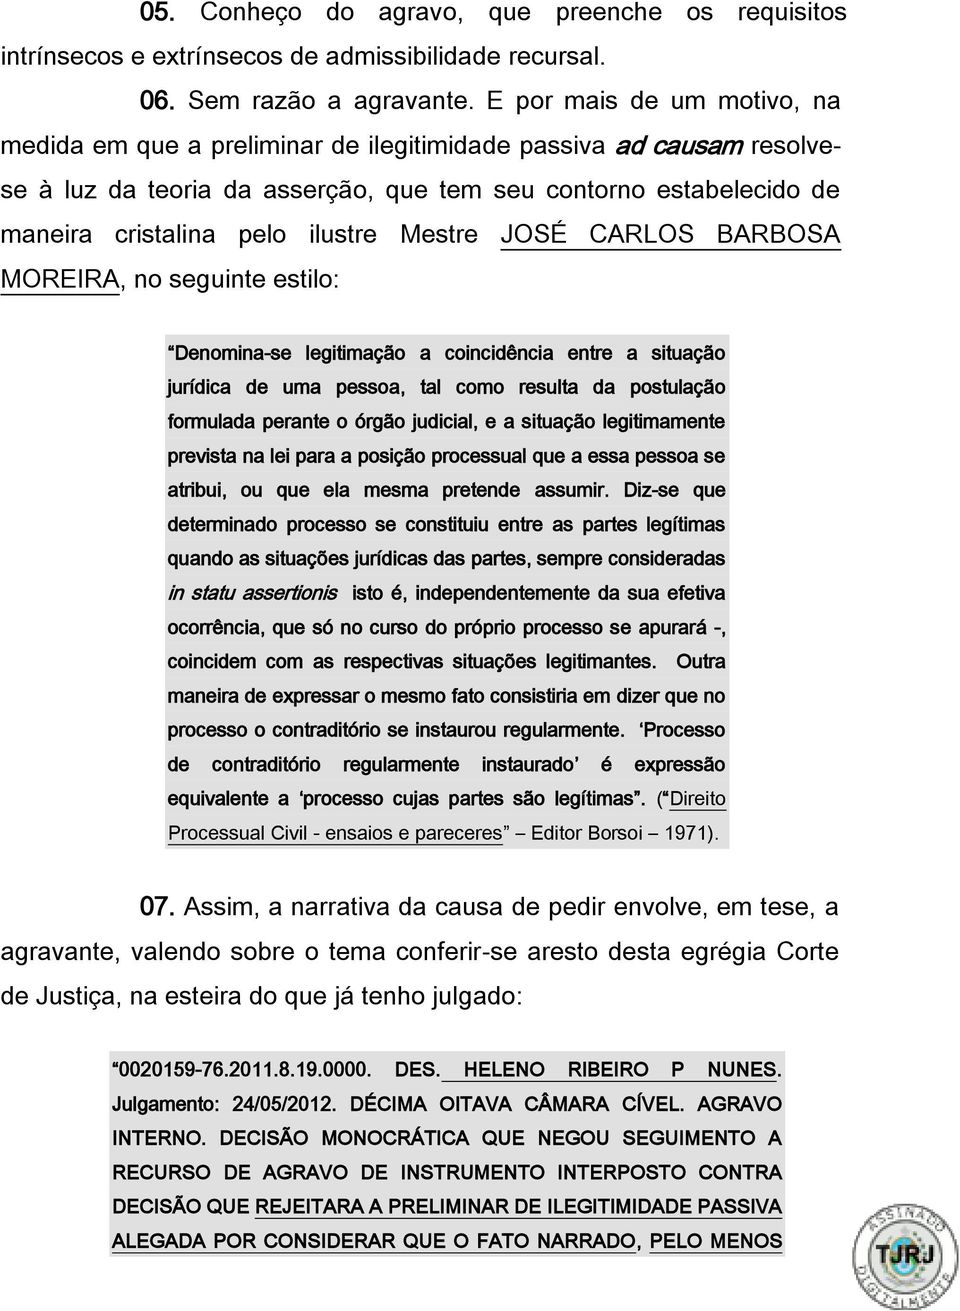 Mestre JOSÉ CARLOS BARBOSA MOREIRA, no seguinte estilo: Denomina-se legitimação a coincidência entre a situação jurídica de uma pessoa, tal como resulta da postulação formulada perante o órgão